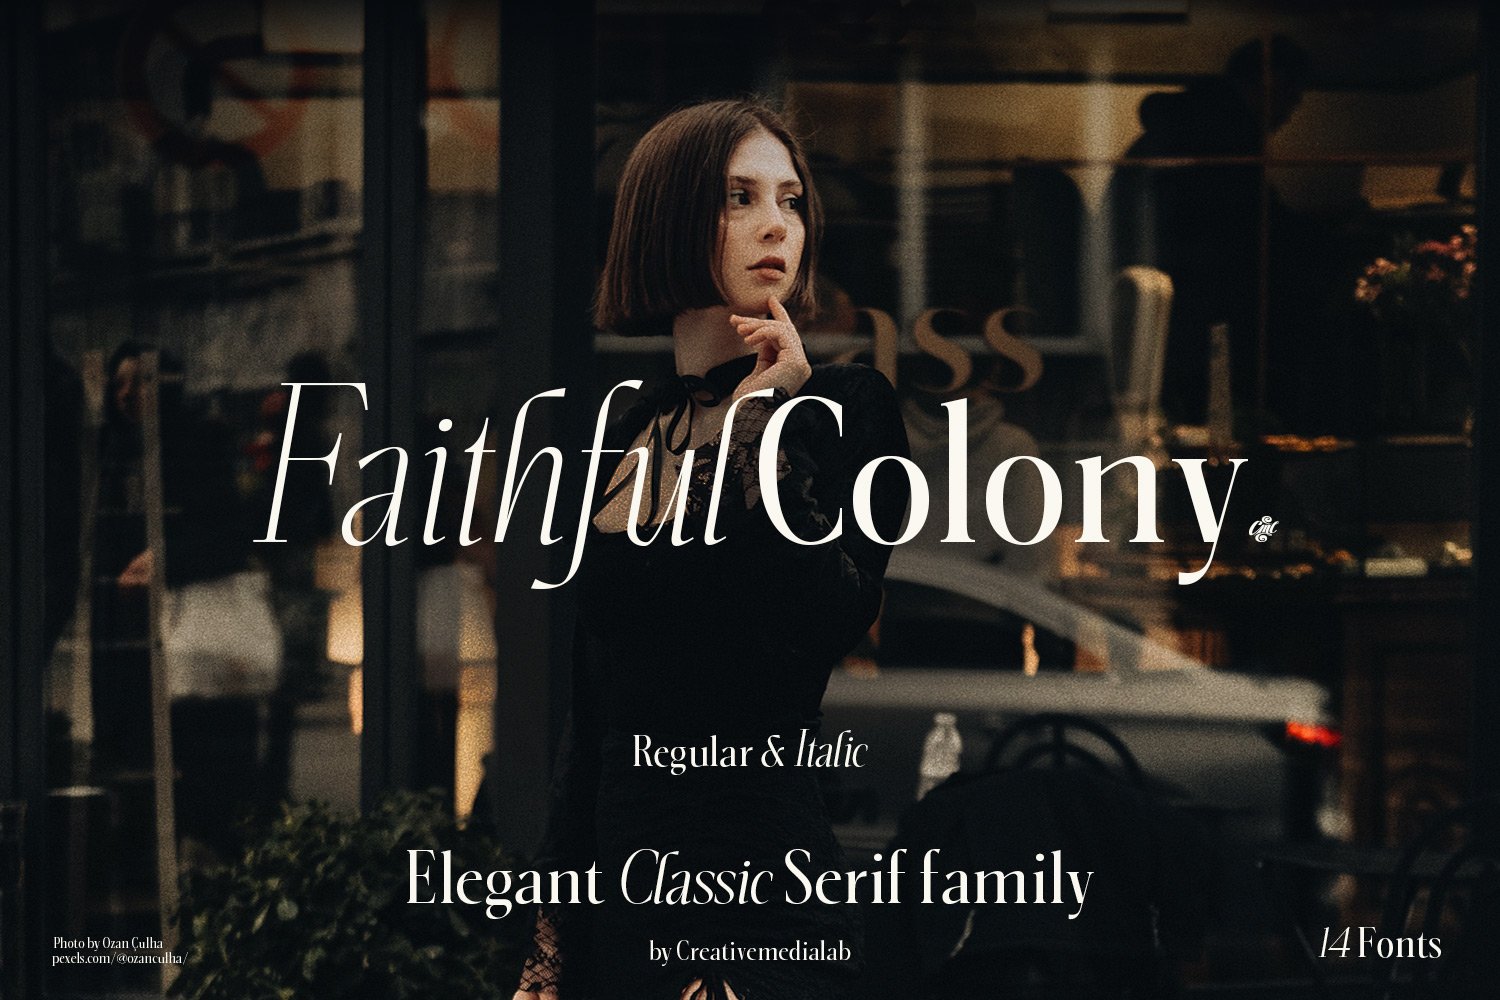 Faithful Colony - Elegant Serif cover image.